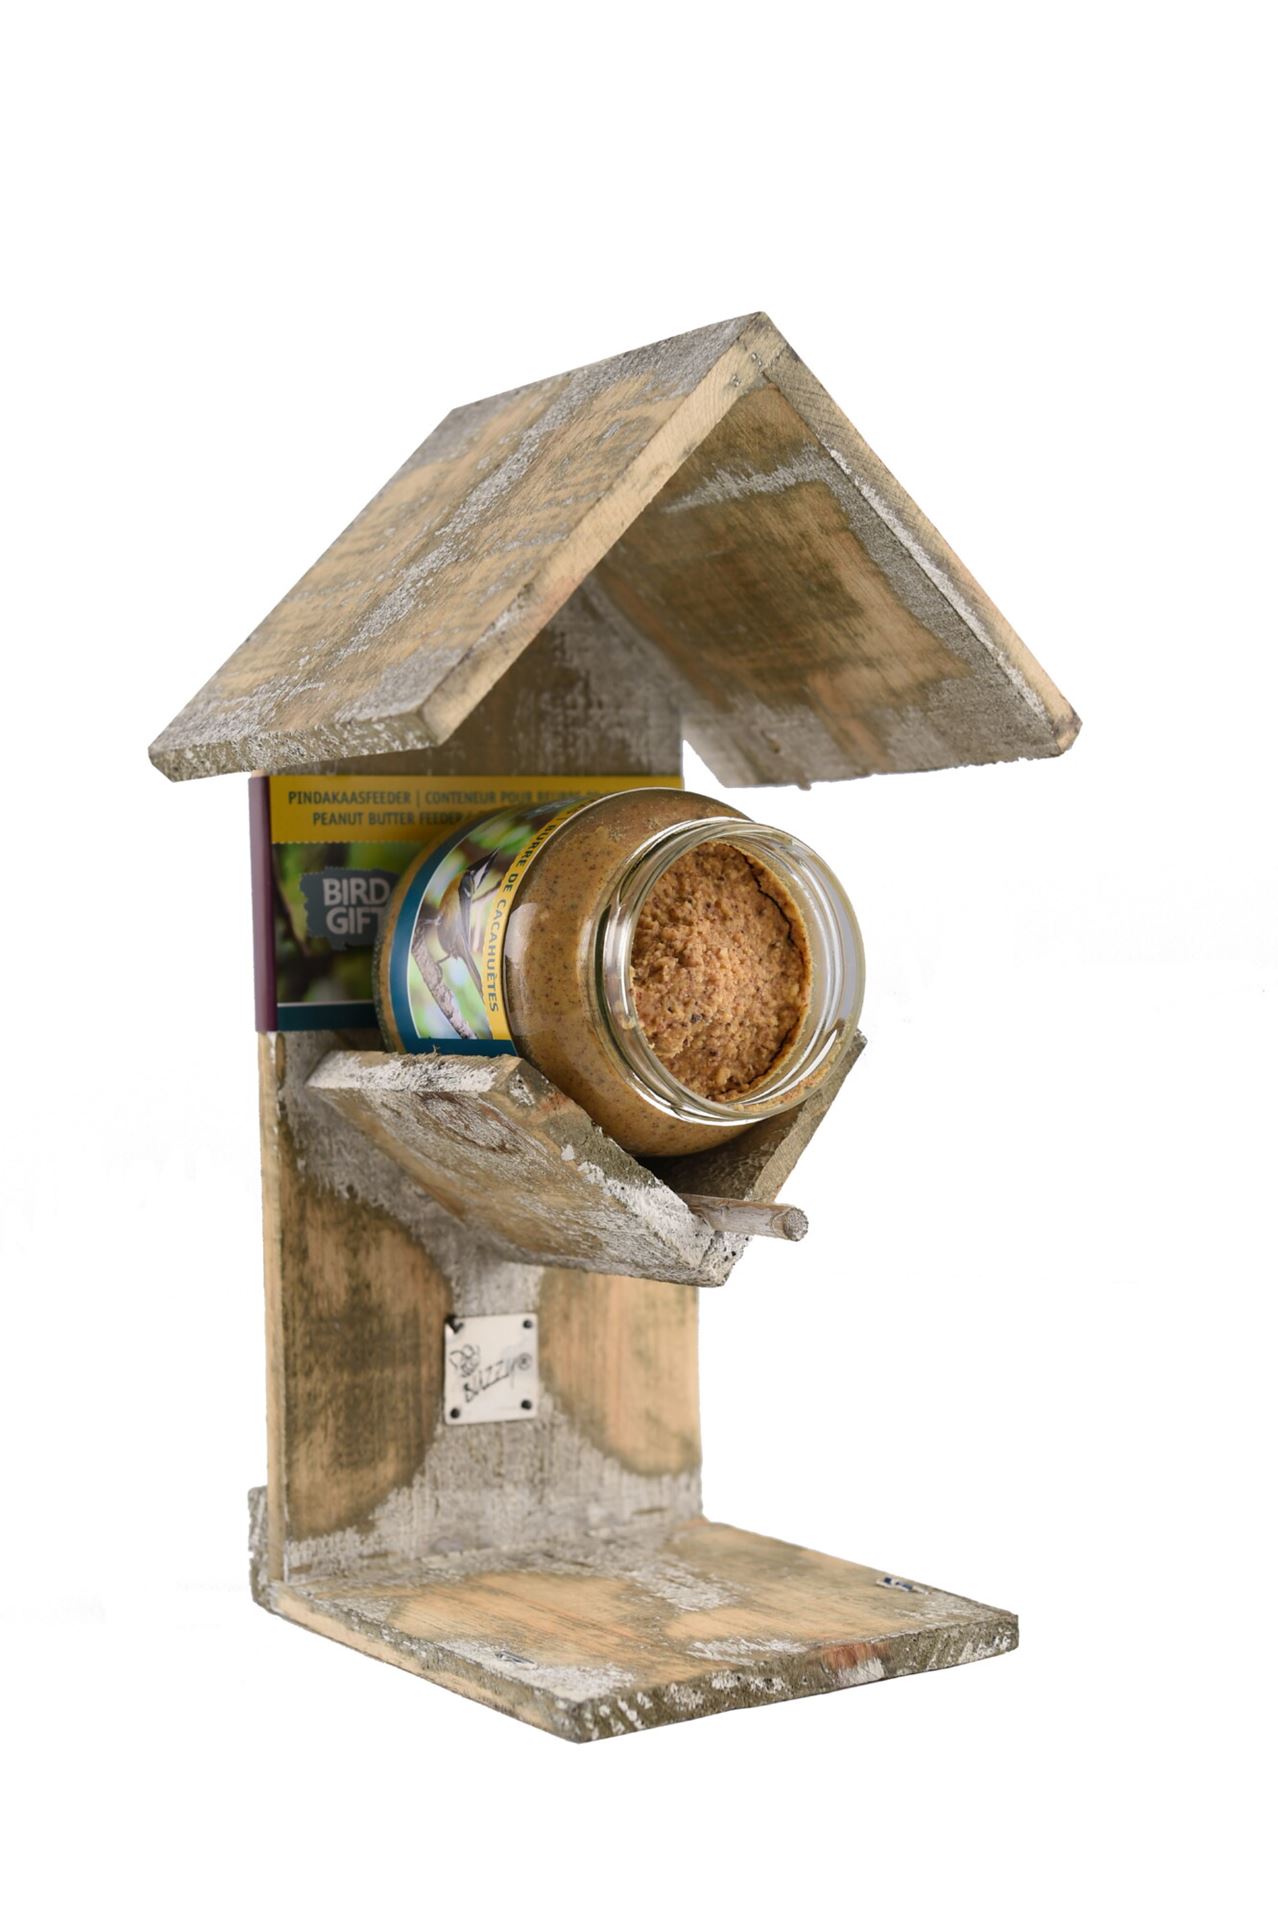 Bûten Gift - Wooden feeder for jar of peanut butter - H27.5xL16.5xB14 cm